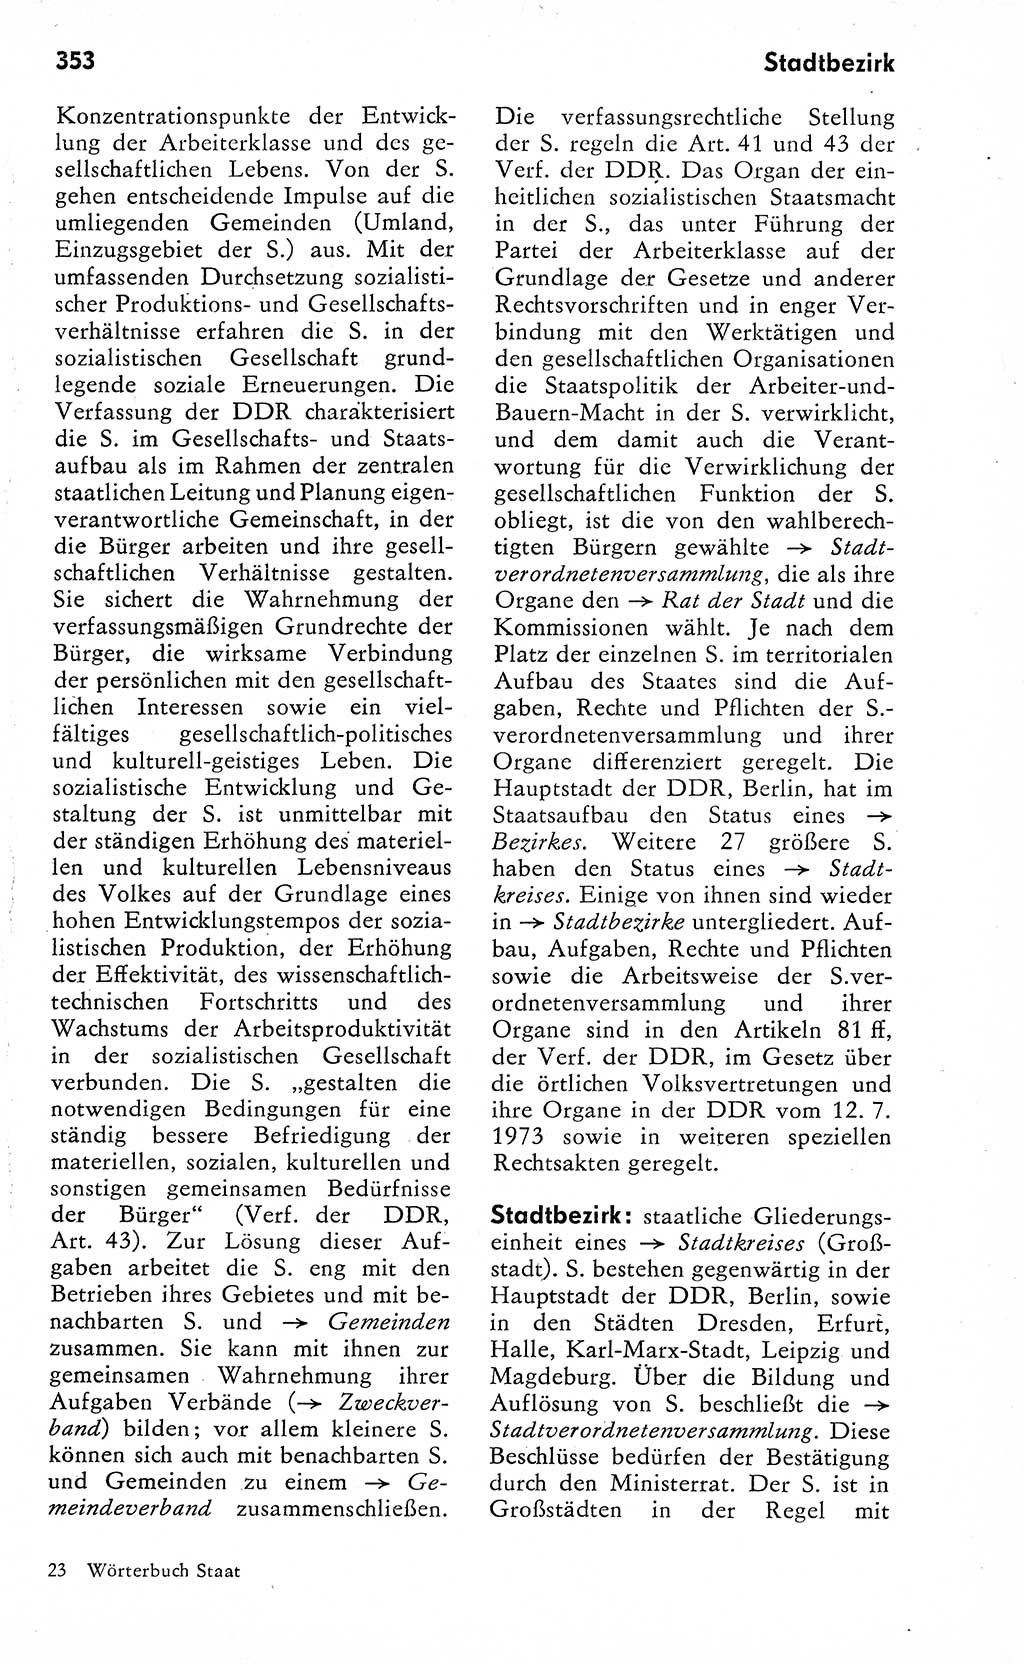 Wörterbuch zum sozialistischen Staat [Deutsche Demokratische Republik (DDR)] 1974, Seite 353 (Wb. soz. St. DDR 1974, S. 353)